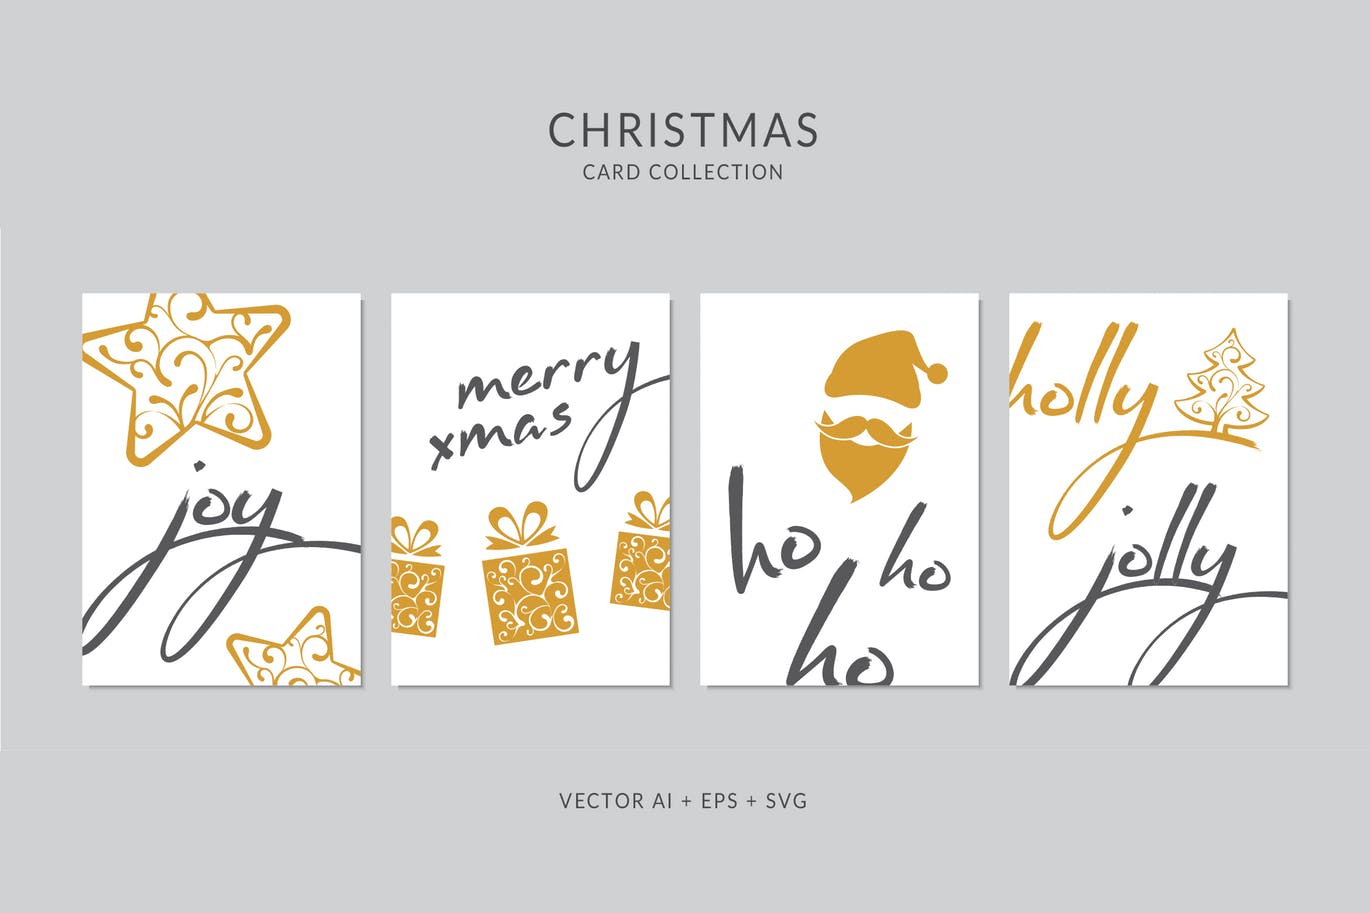 创意圣诞手绘图案&手写祝福语圣诞节贺卡设计模板 Christmas Greeting Card Vector Set插图